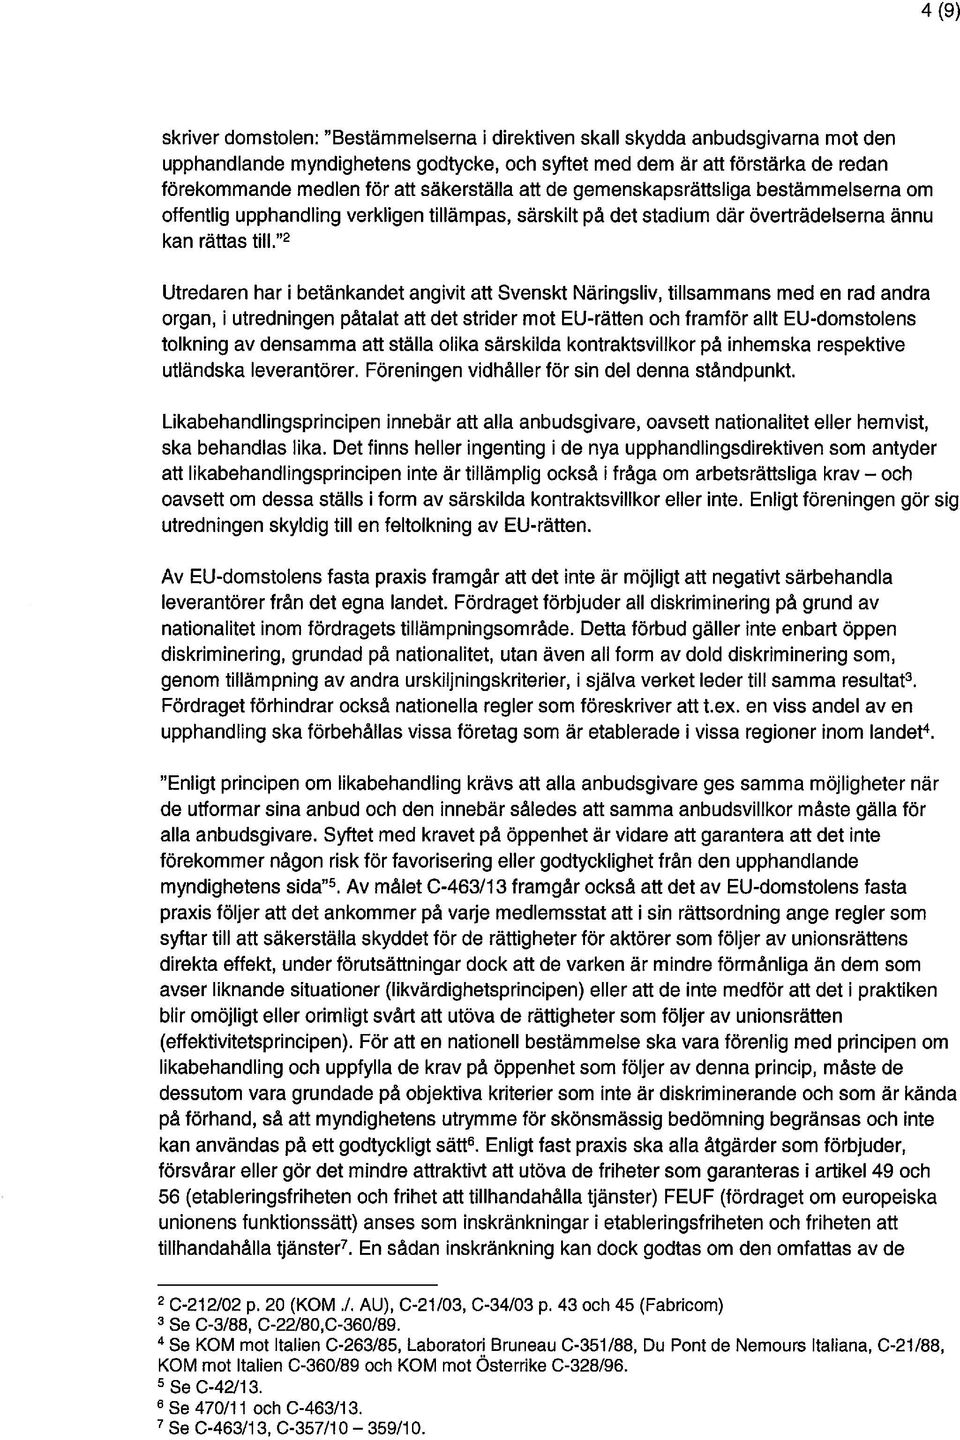 2 Utredaren har i betänkandet angivit att Svenskt Näringsliv, tillsammans med en rad andra organ, i utredningen påtalat att det strider mot EU-räffen och framför allt EU-domstolens tolkning av